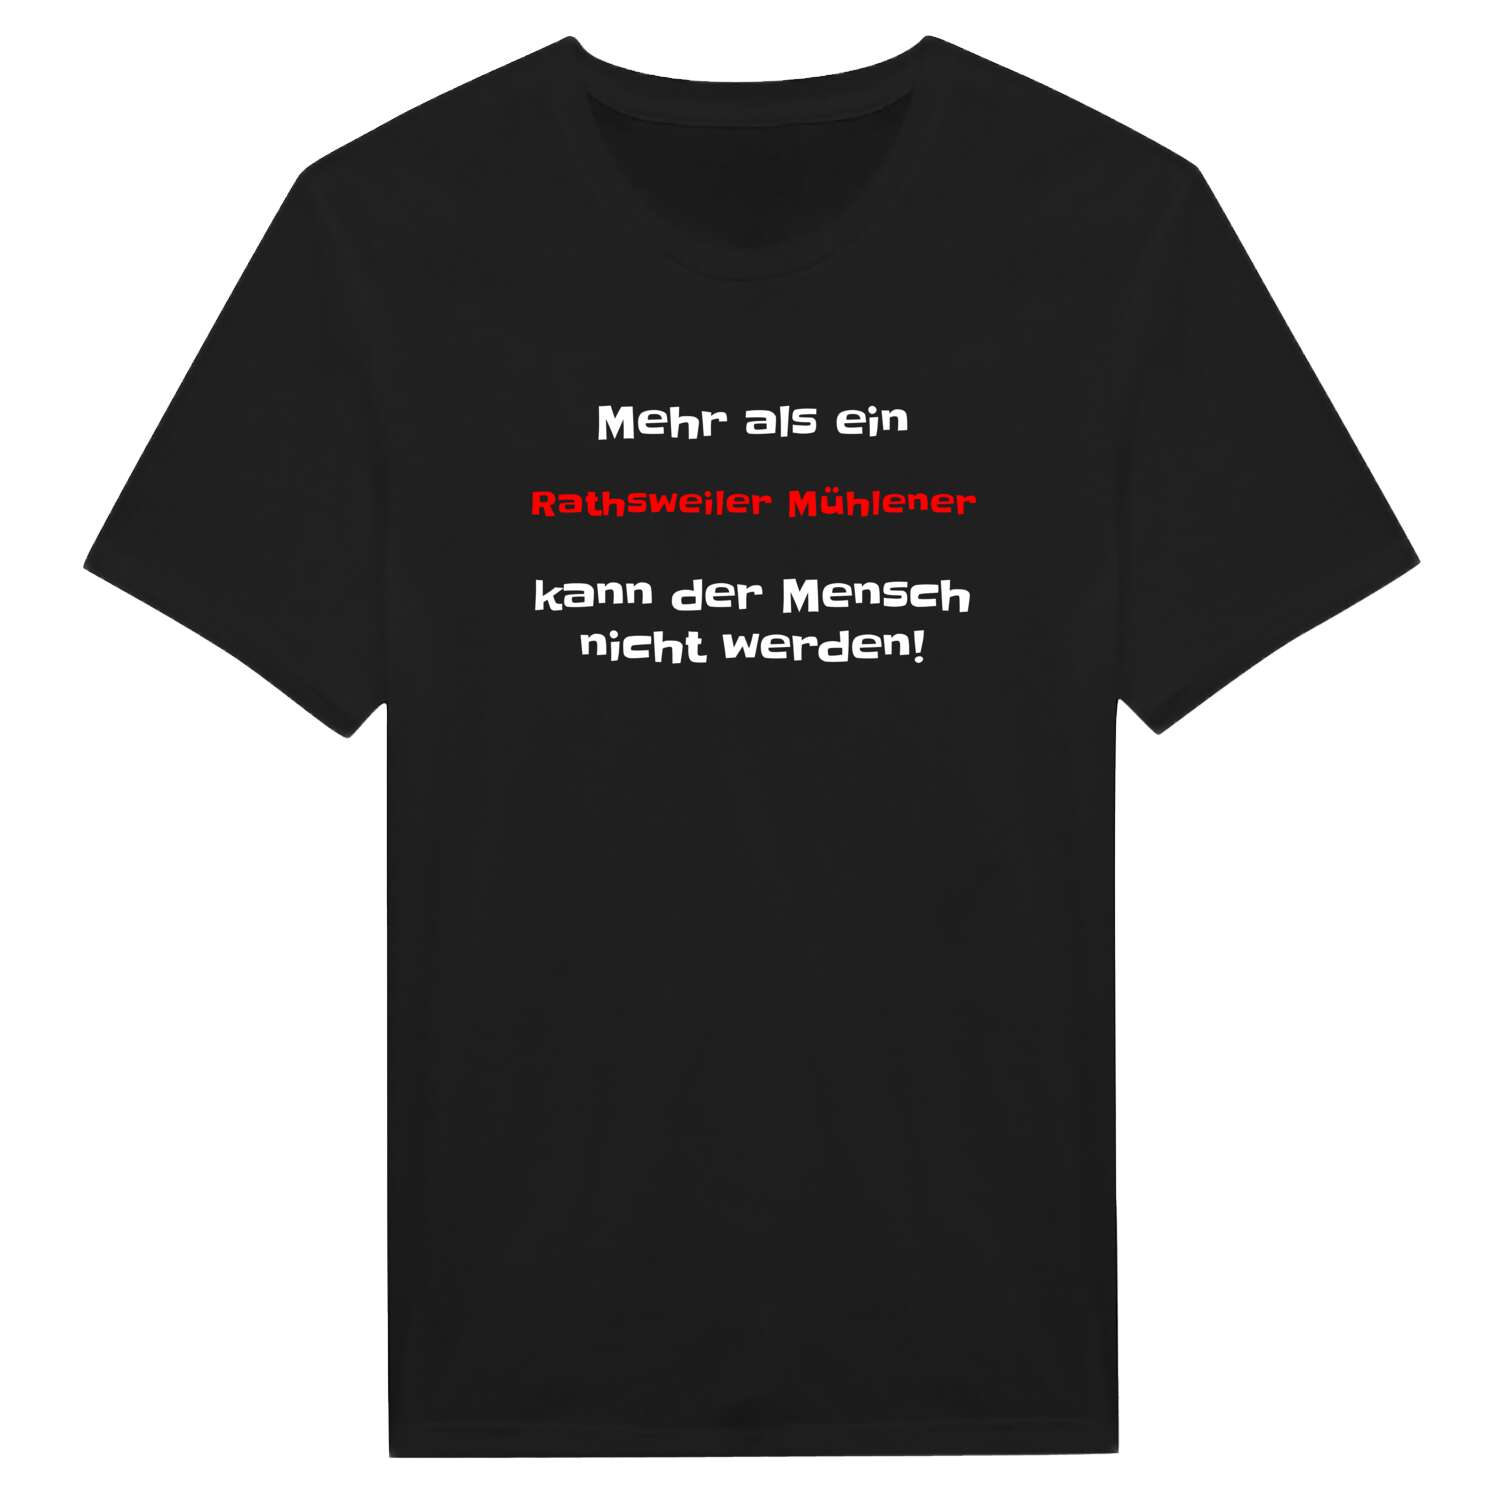 Rathsweiler Mühle T-Shirt »Mehr als ein«